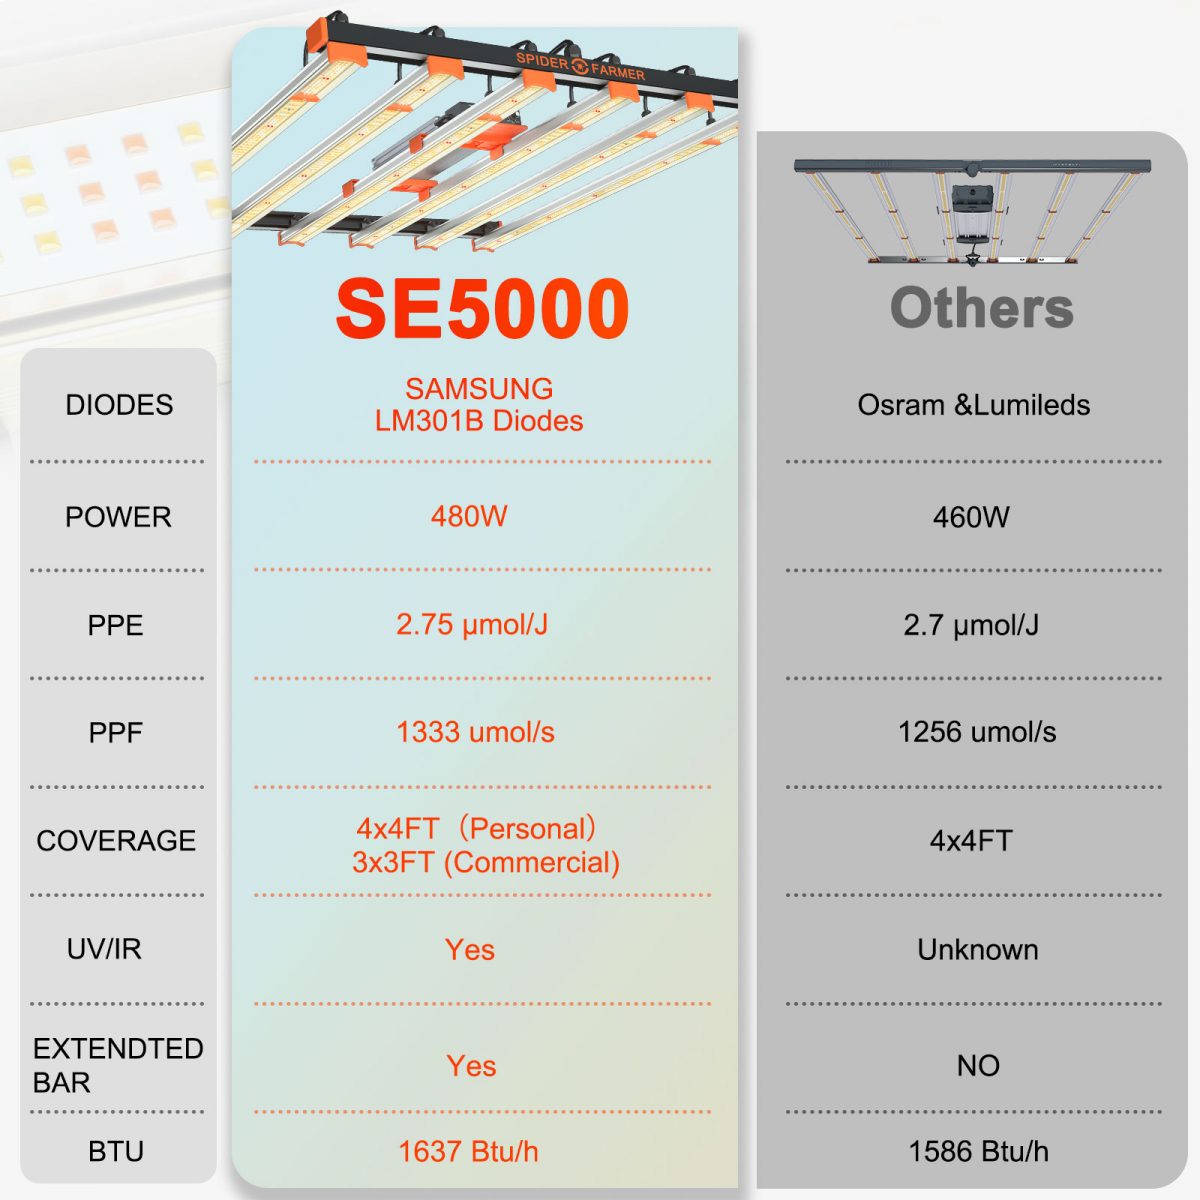 SE5000黑橙色主图对比图 1 1200x1200 1